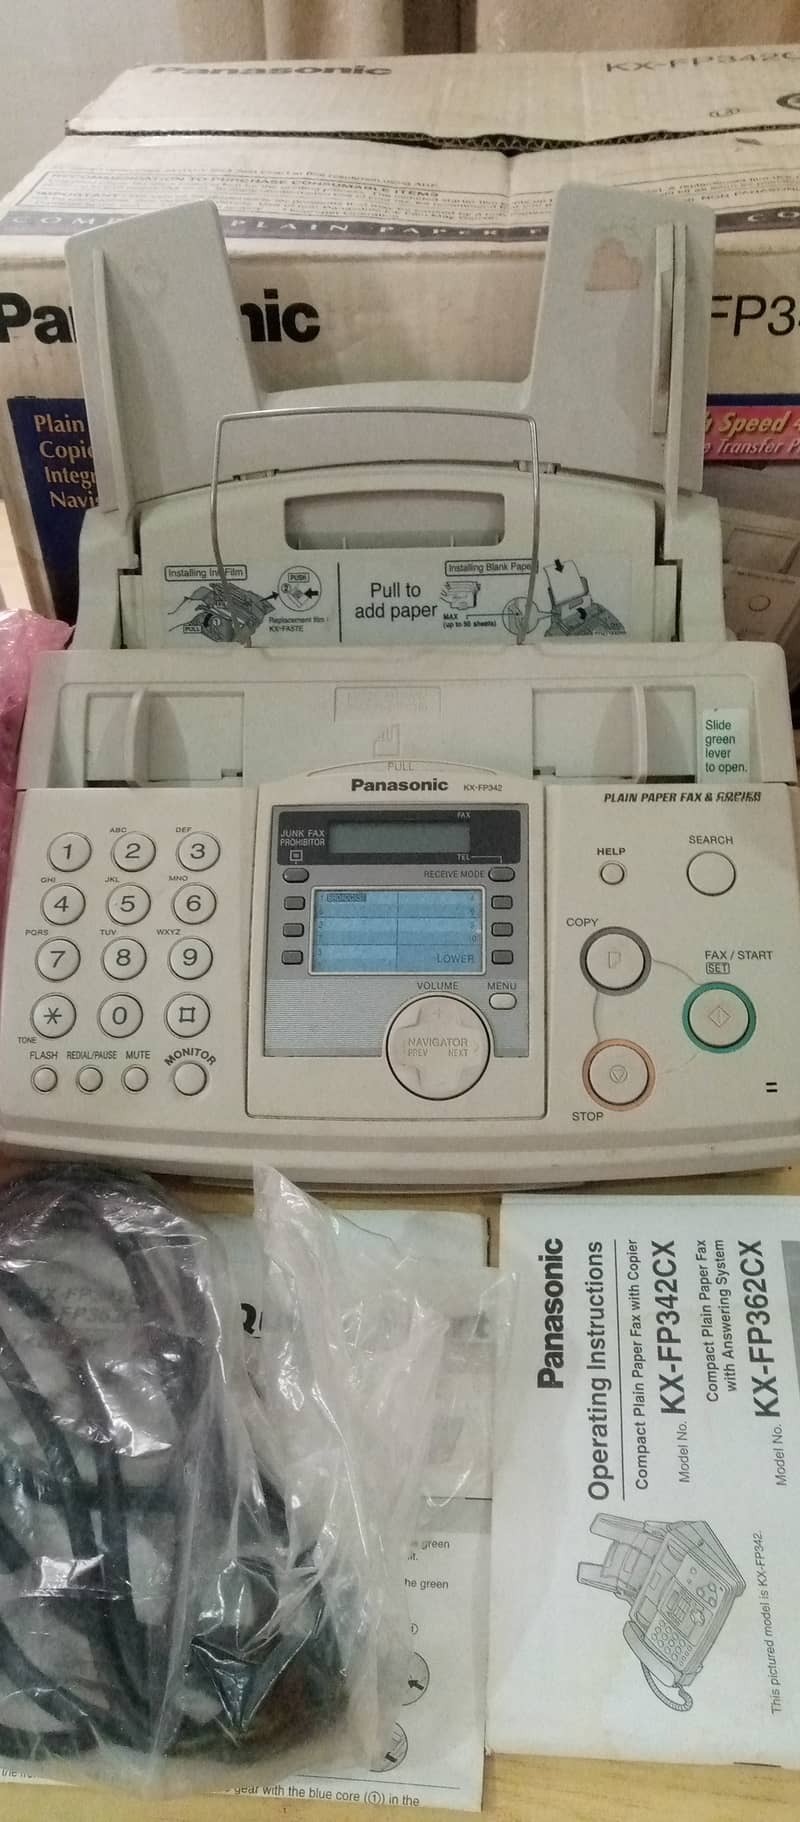 Panasonic fax machine,KX-FP342CX,Compact plain paper fax copier & answ 2